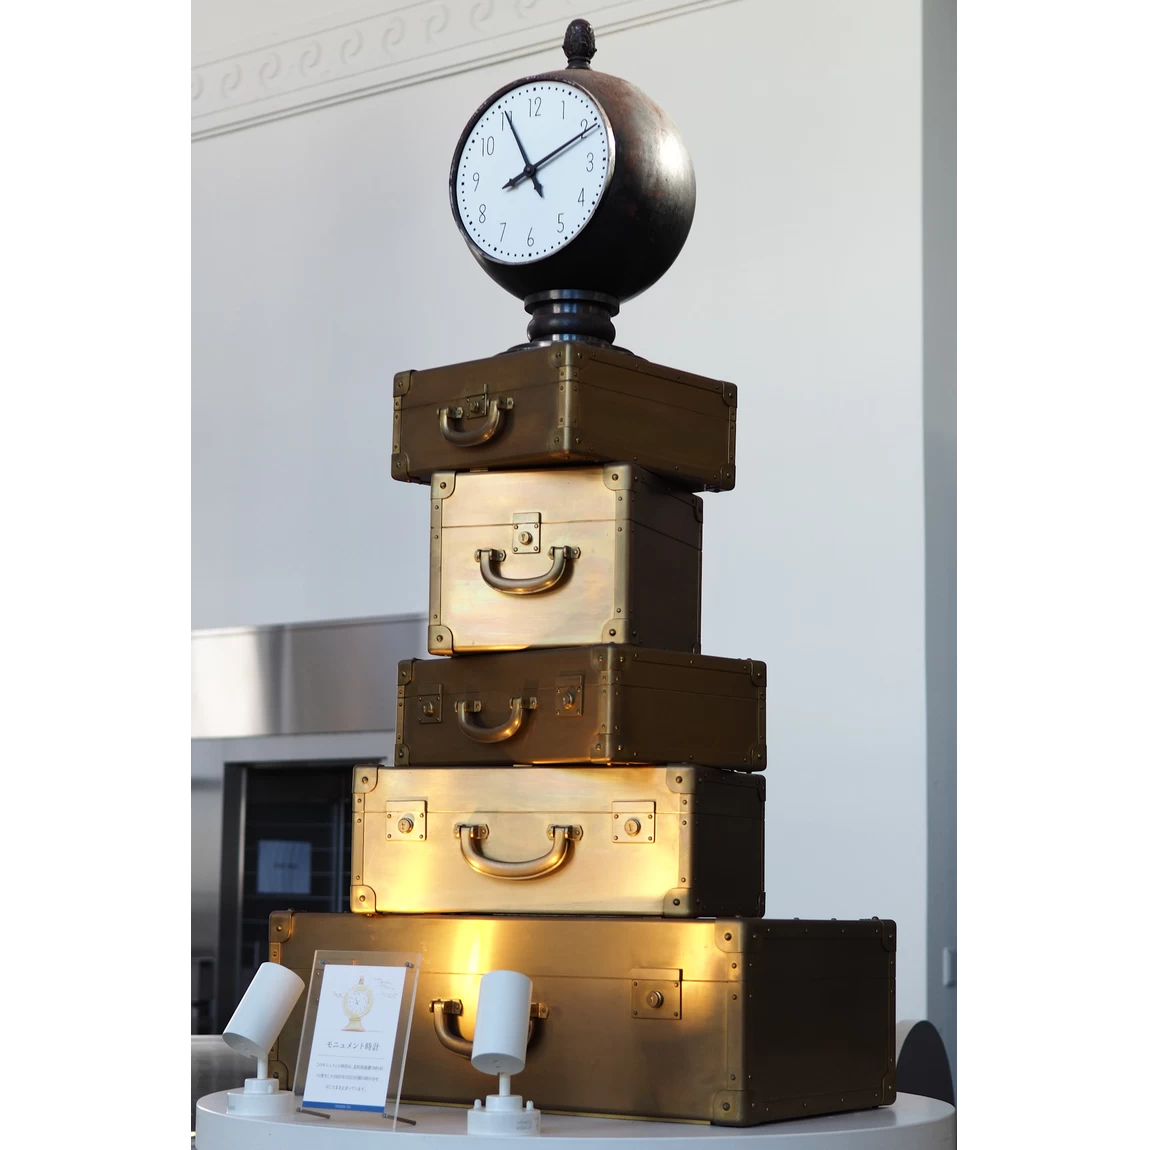 1925のホールにある、“かばんの町”豊岡をイメージしたオブジェ。オブジェの最上部に配置された時計の針は、1925年の北但大震災が発生した11時11分を指し示しており、復興と現代への出発を象徴している